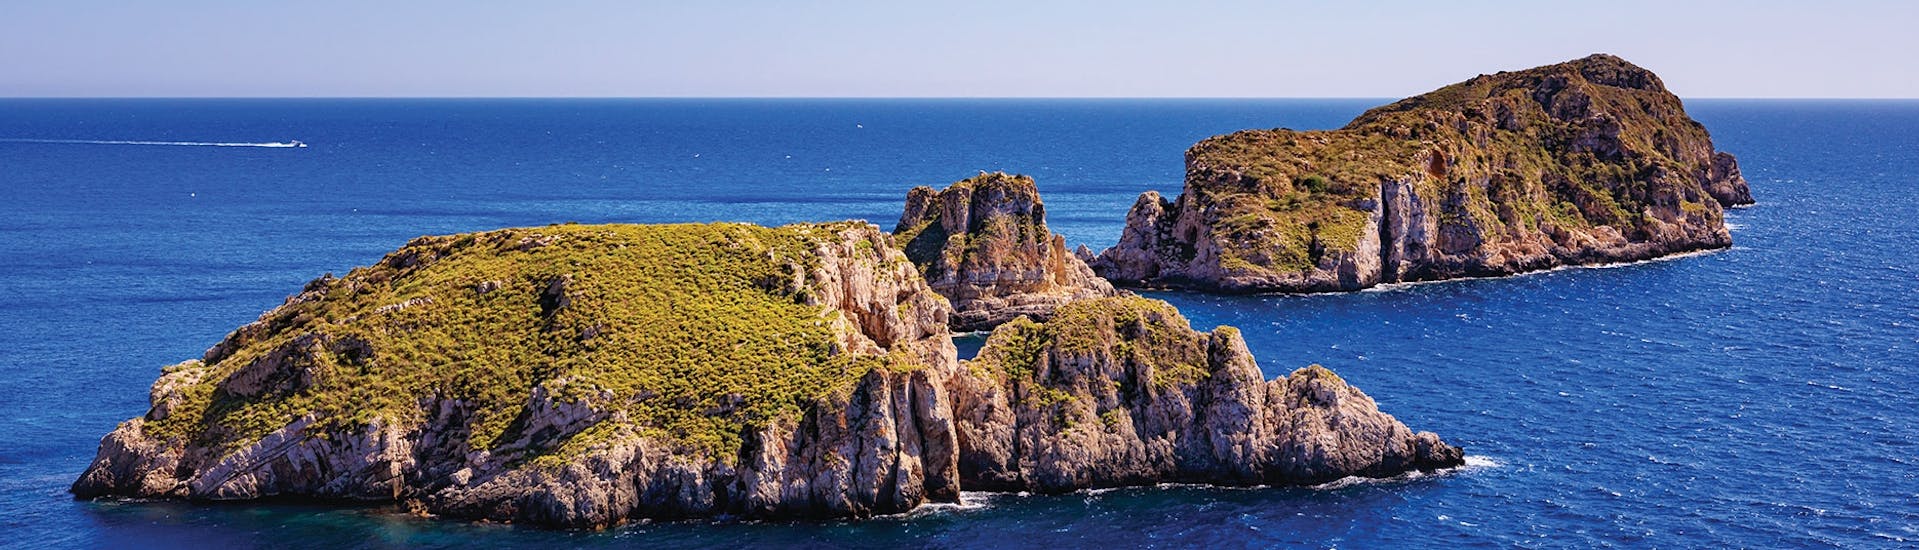 Gita in catamarano da Peguera a Isole Malgrats con bagno in mare e visita turistica.